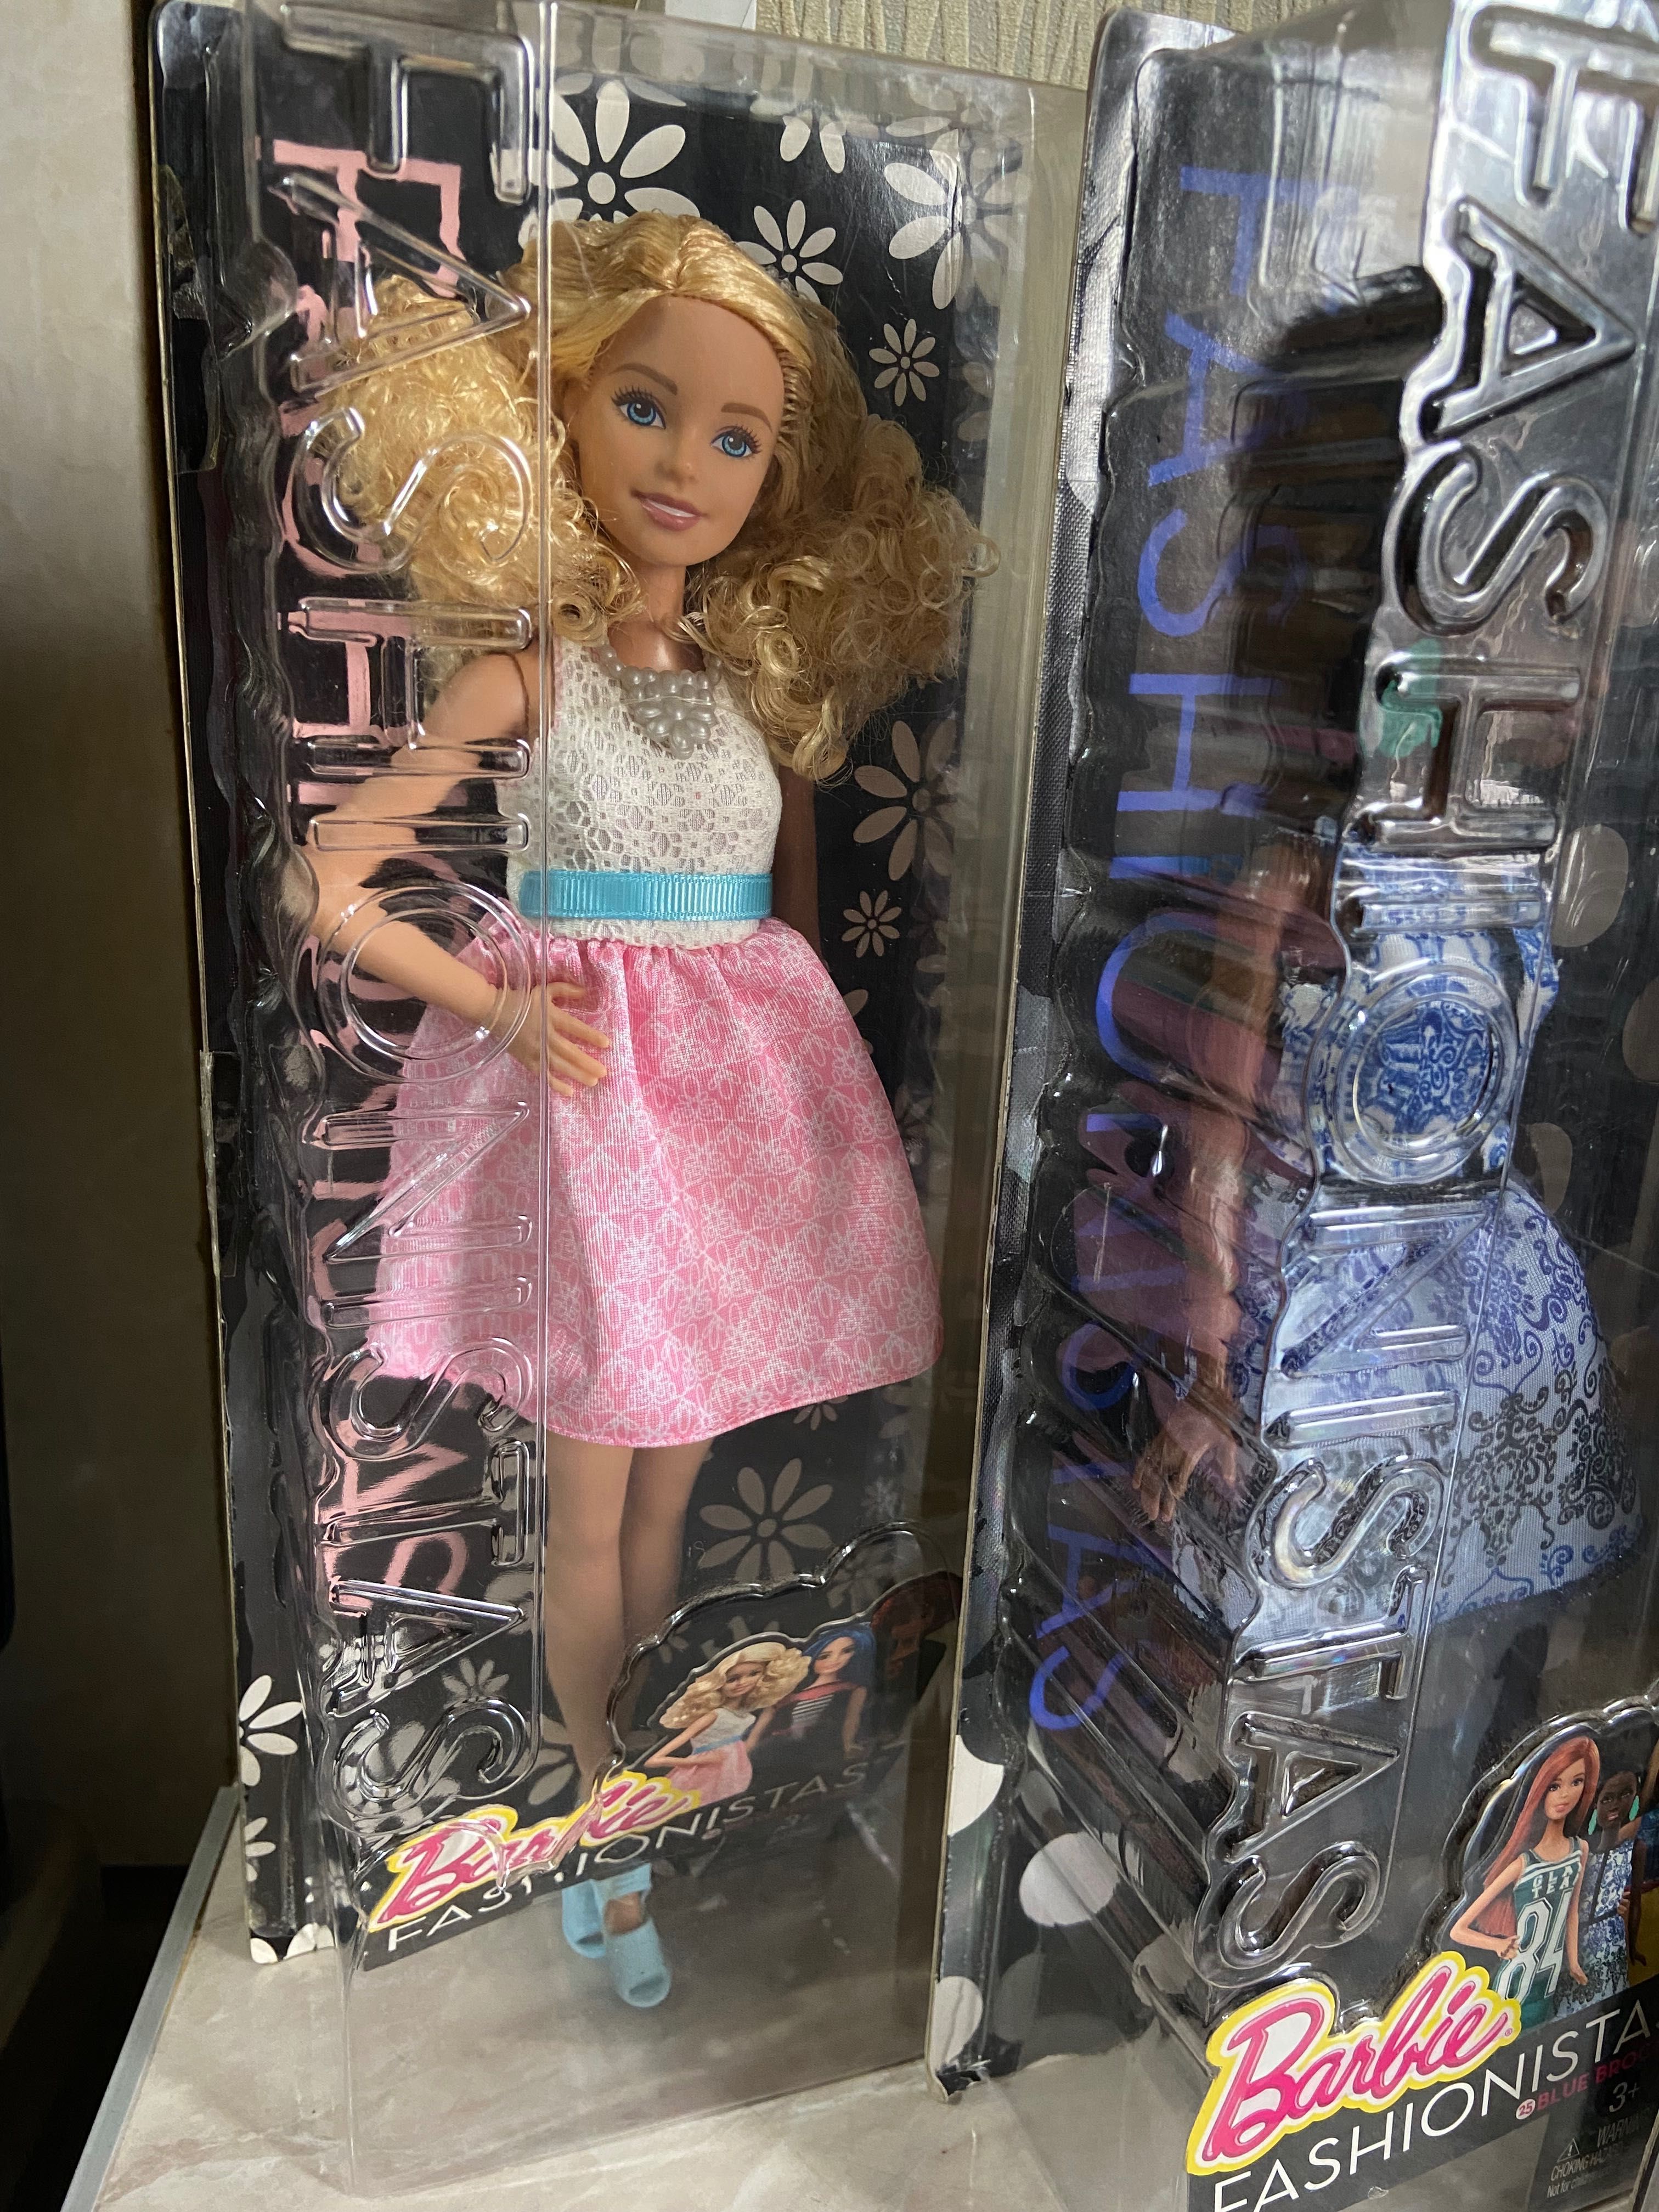 Куклы барби 3 шт цена за все . Оригинал с Америки запечатанные